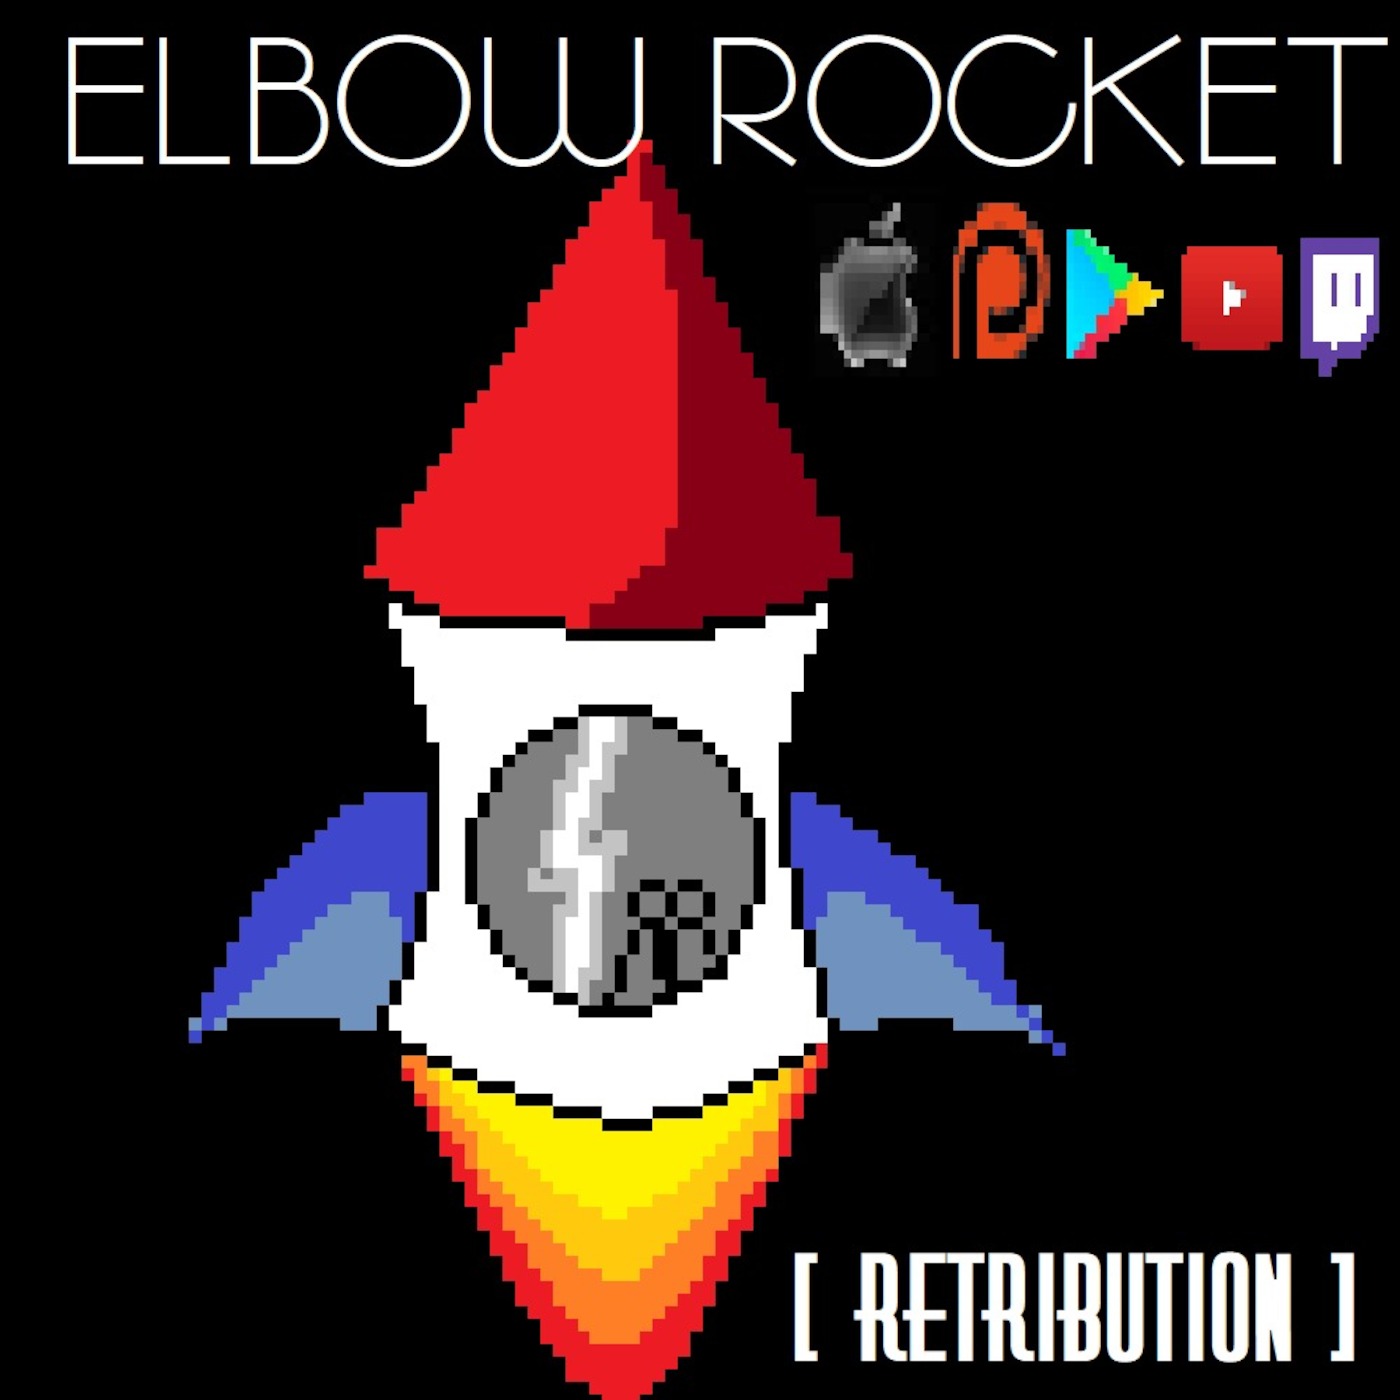 Elbow Rocket